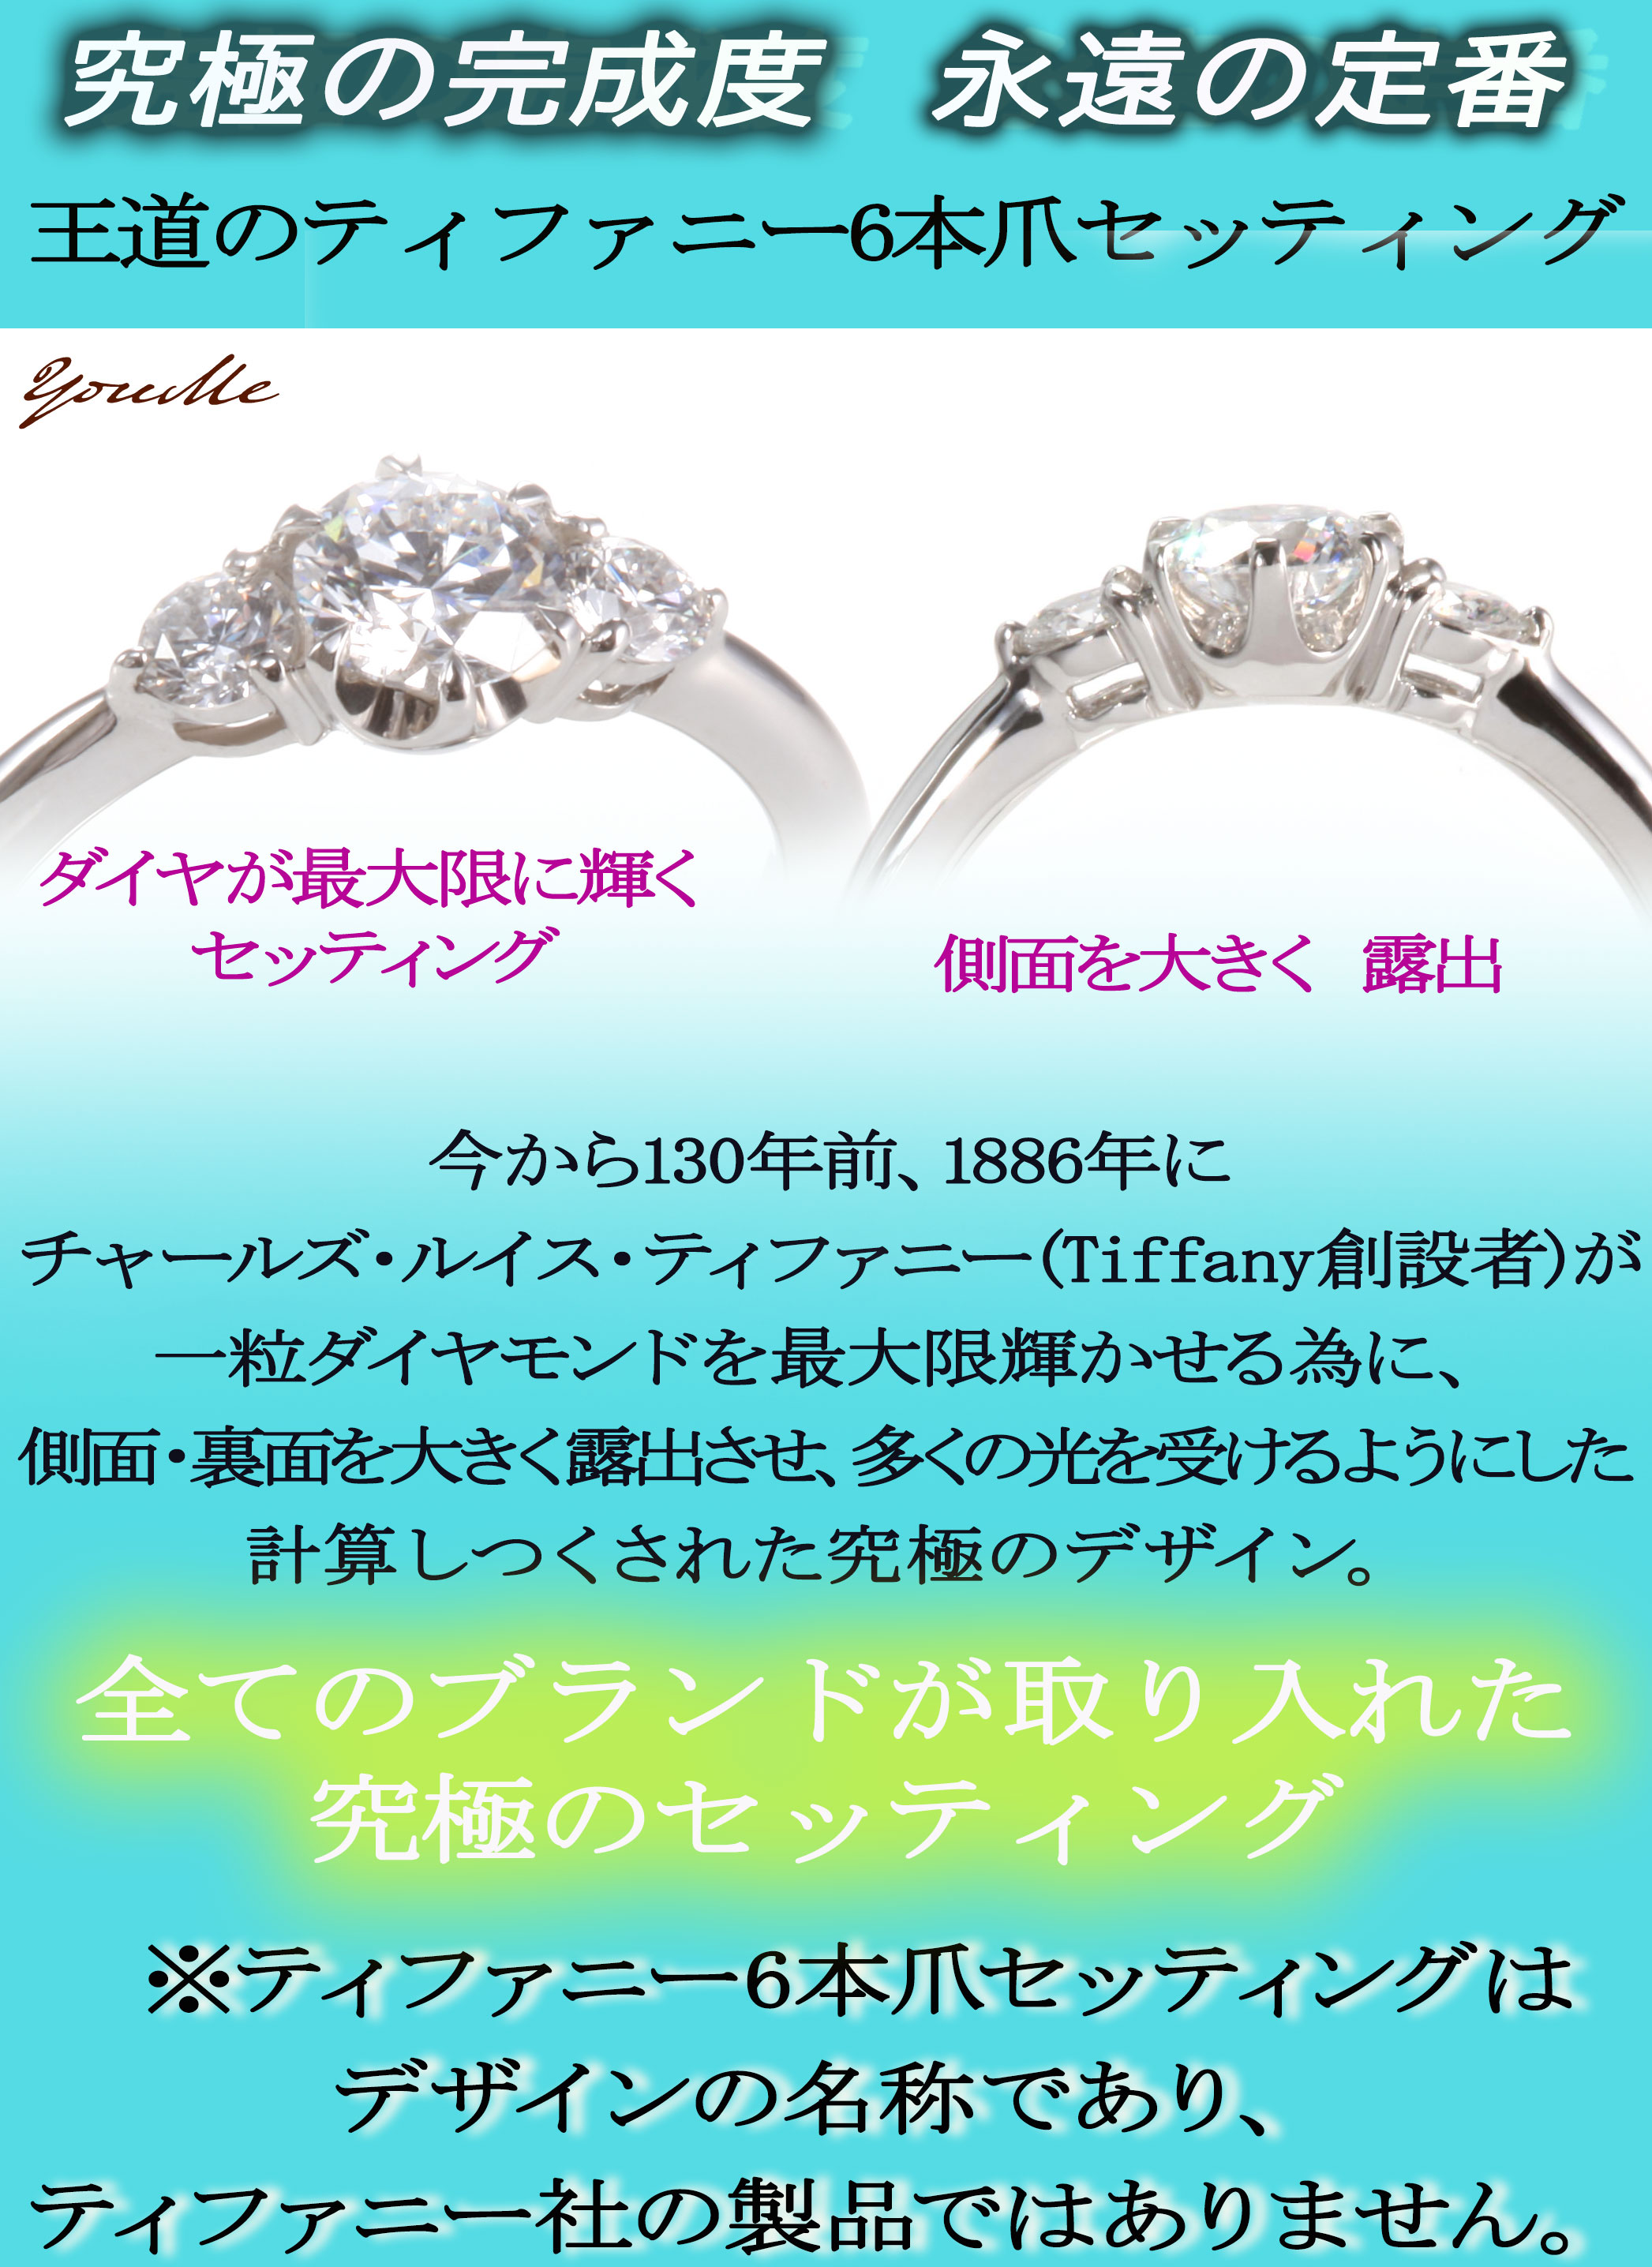 婚約指輪 安い 婚約指輪 ダイヤ 婚約指輪 ティファニー6本爪デザイン サイドダイヤ 0.5ct D VVS1 EX エンゲージリング サイズ直し無料  刻印無料